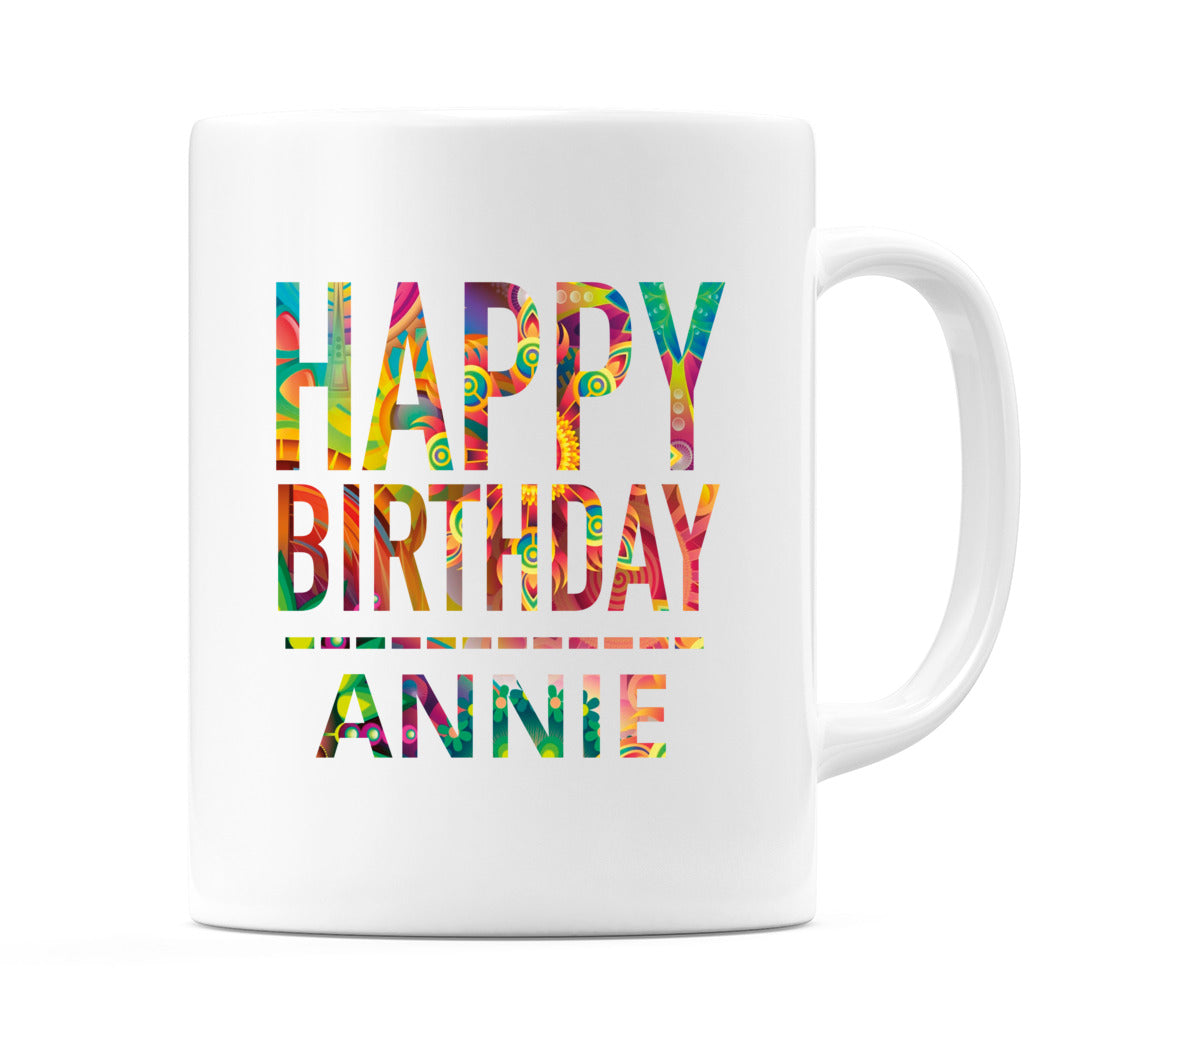 Happy Birthday Annie (Tie Dye Effect) Mug Cup by WeDoMugs